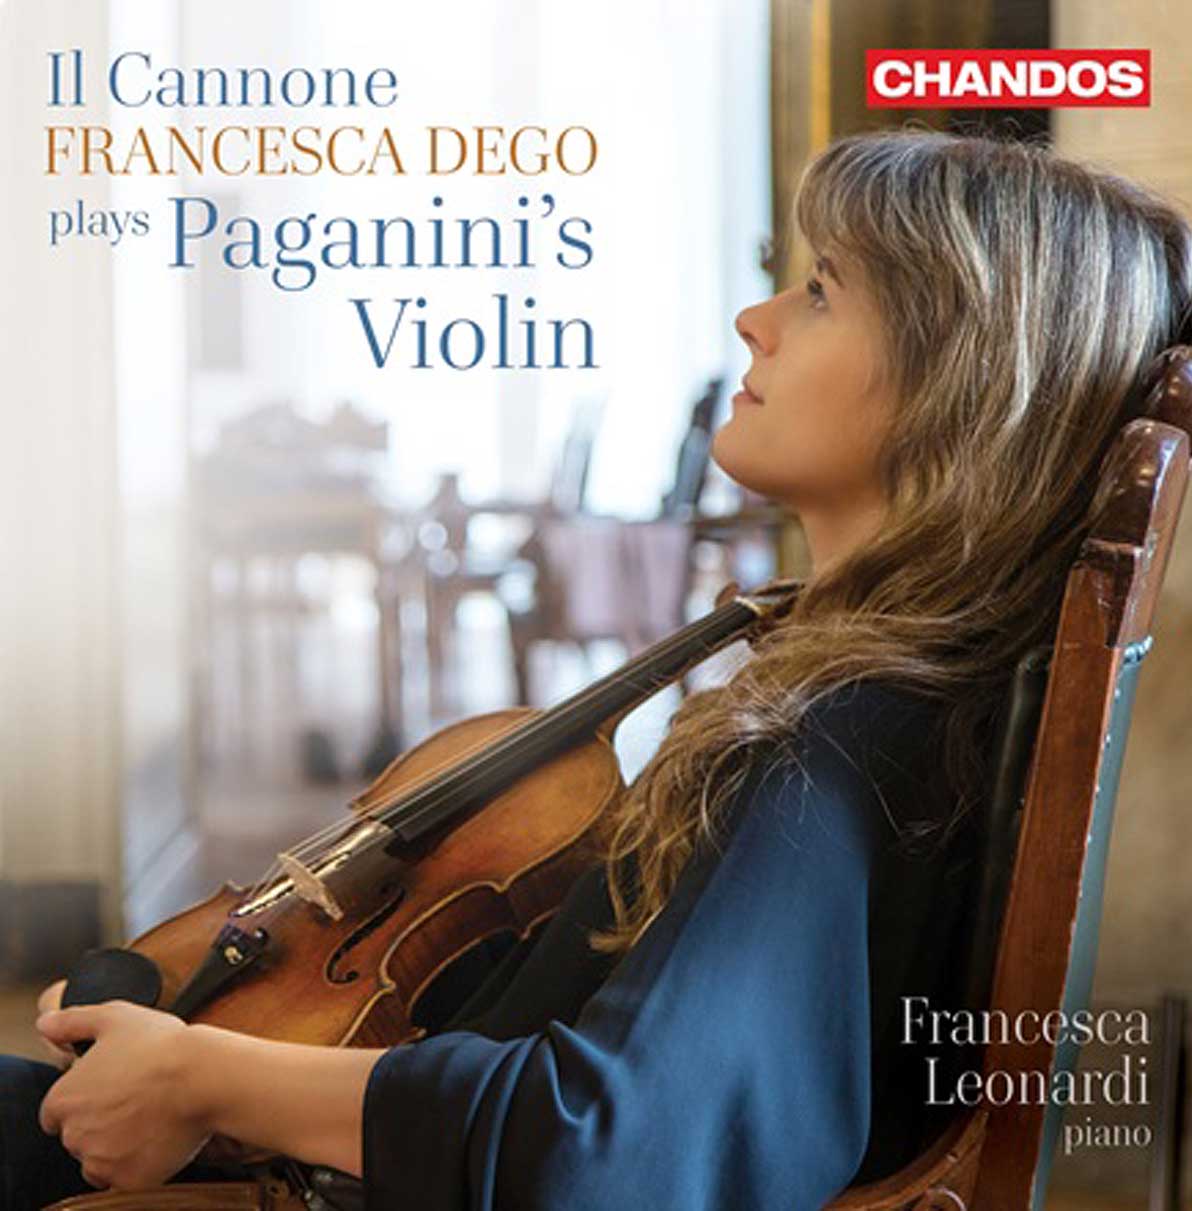 Francesca Dego : Parution chez Chandos d'un CD en hommage à Niccolo Paganini